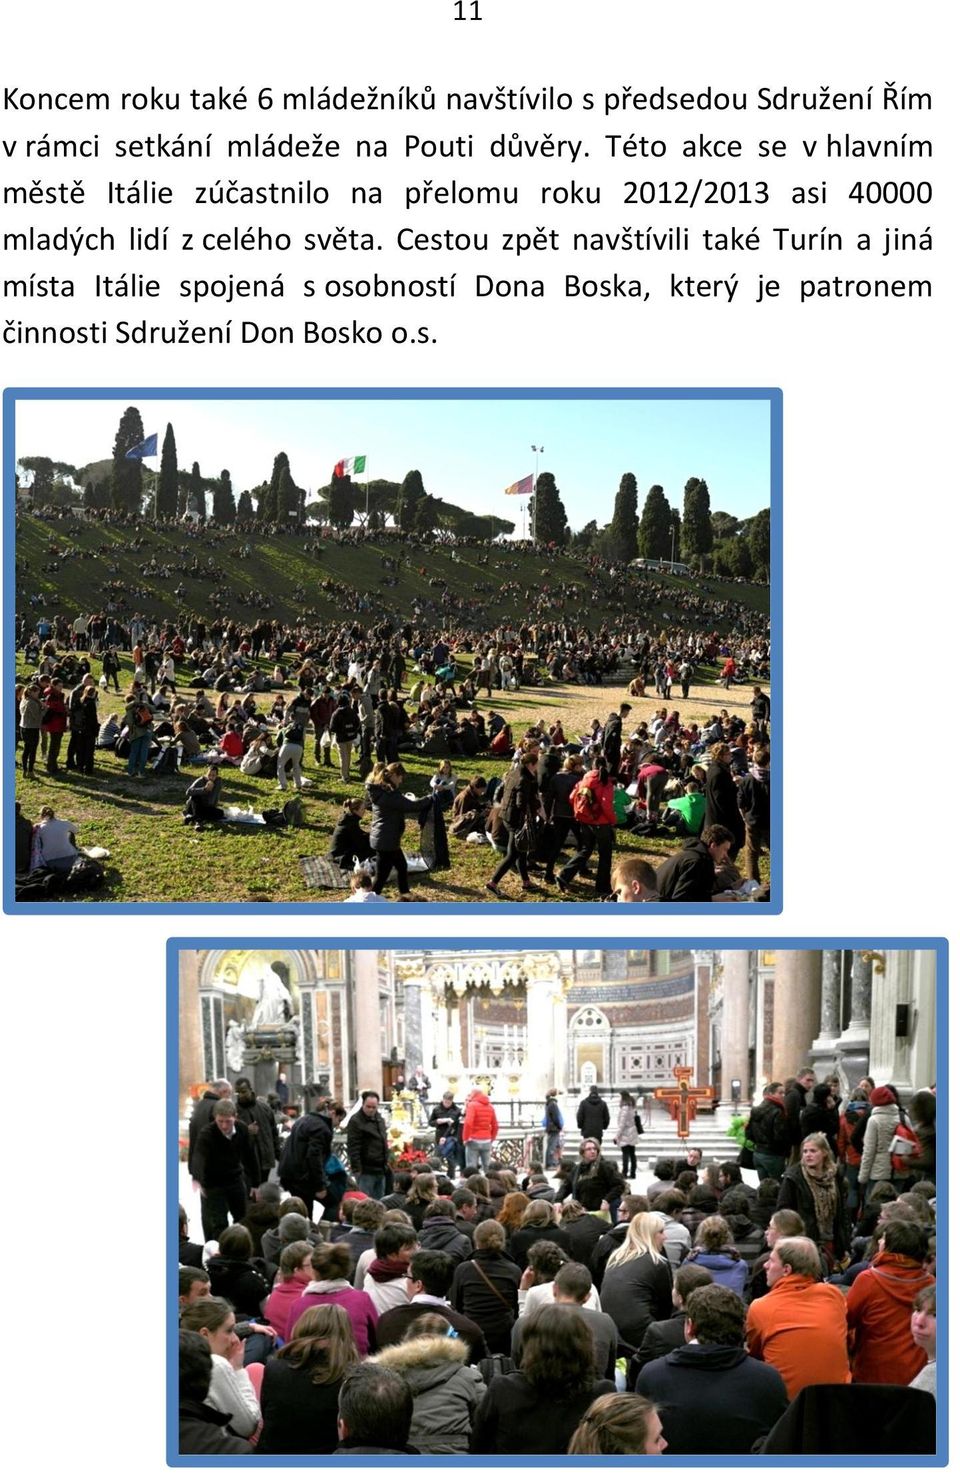 Této akce se v hlavním městě Itálie zúčastnilo na přelomu roku 2012/2013 asi 40000